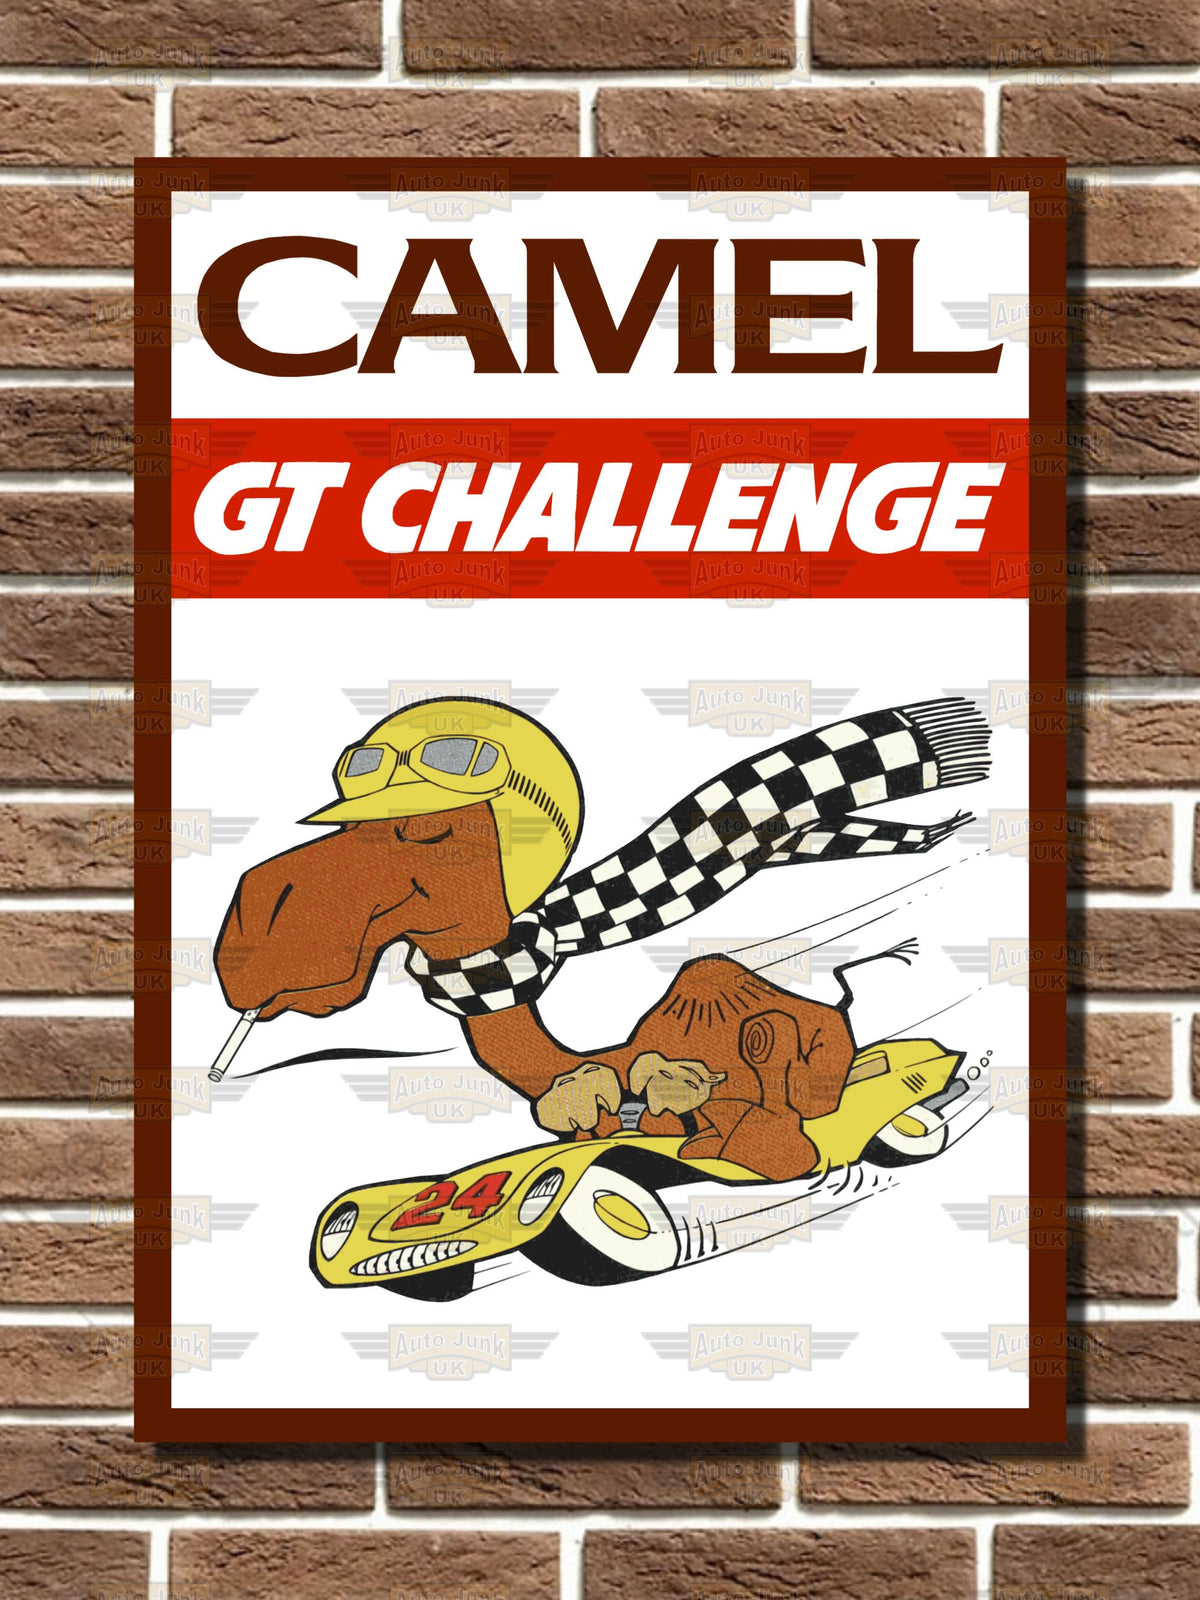 Camel GT Challenge Metal Sign